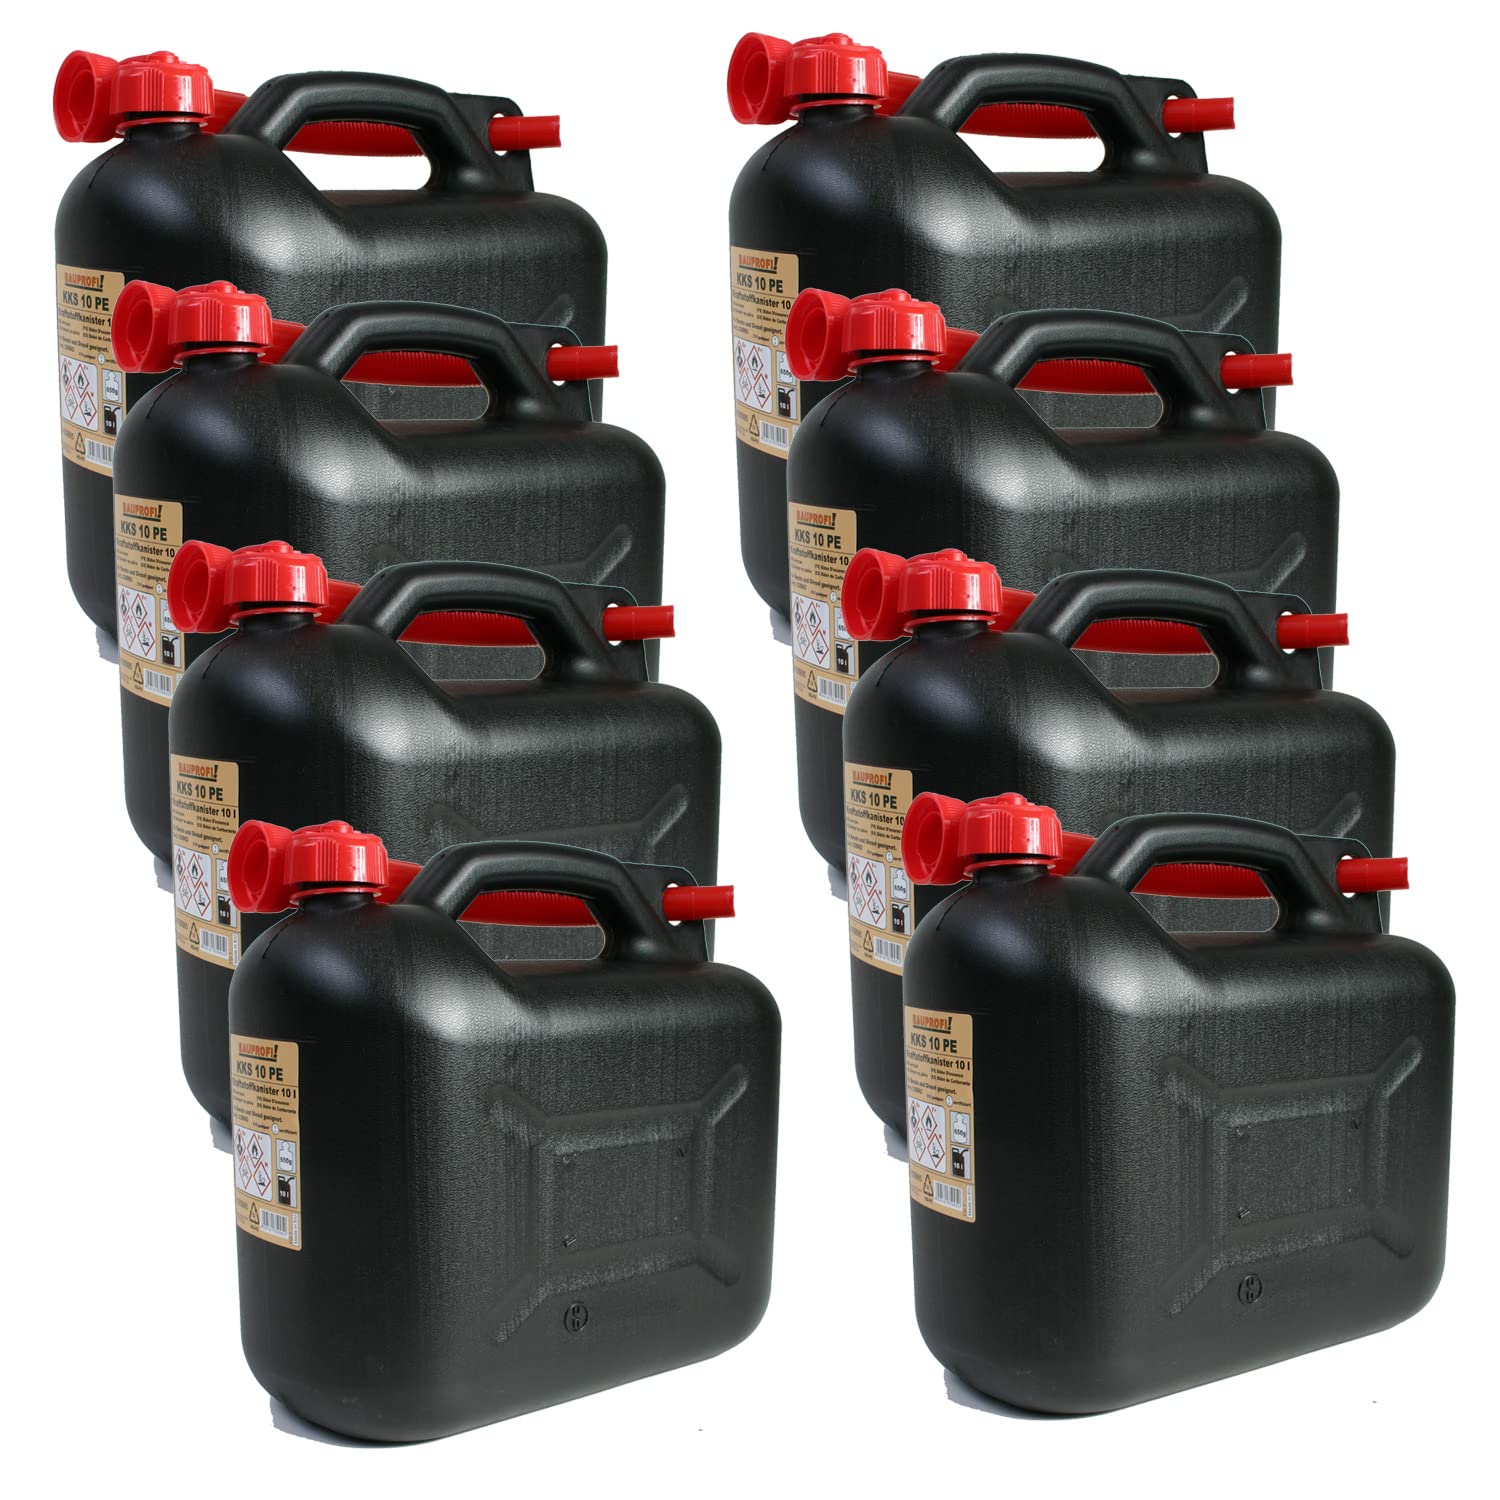 BAUPROFI 8er Set: 8x Benzinkanister KKS 10 PE Liter schwarz mit UN Zulassung